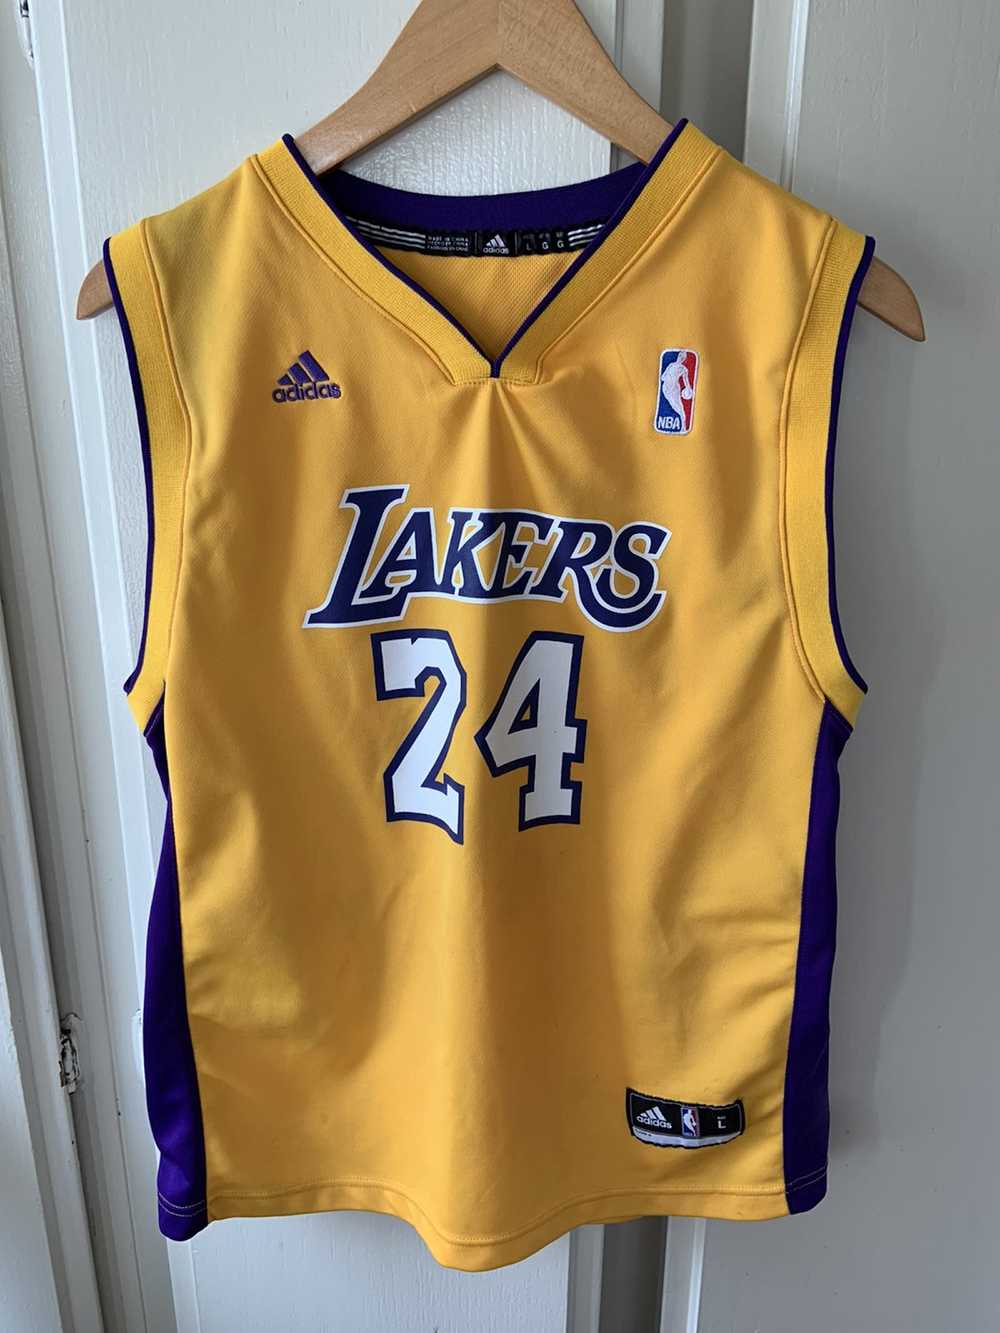 Adidas × NBA Kobe Bryant La Lakers jersey - image 1